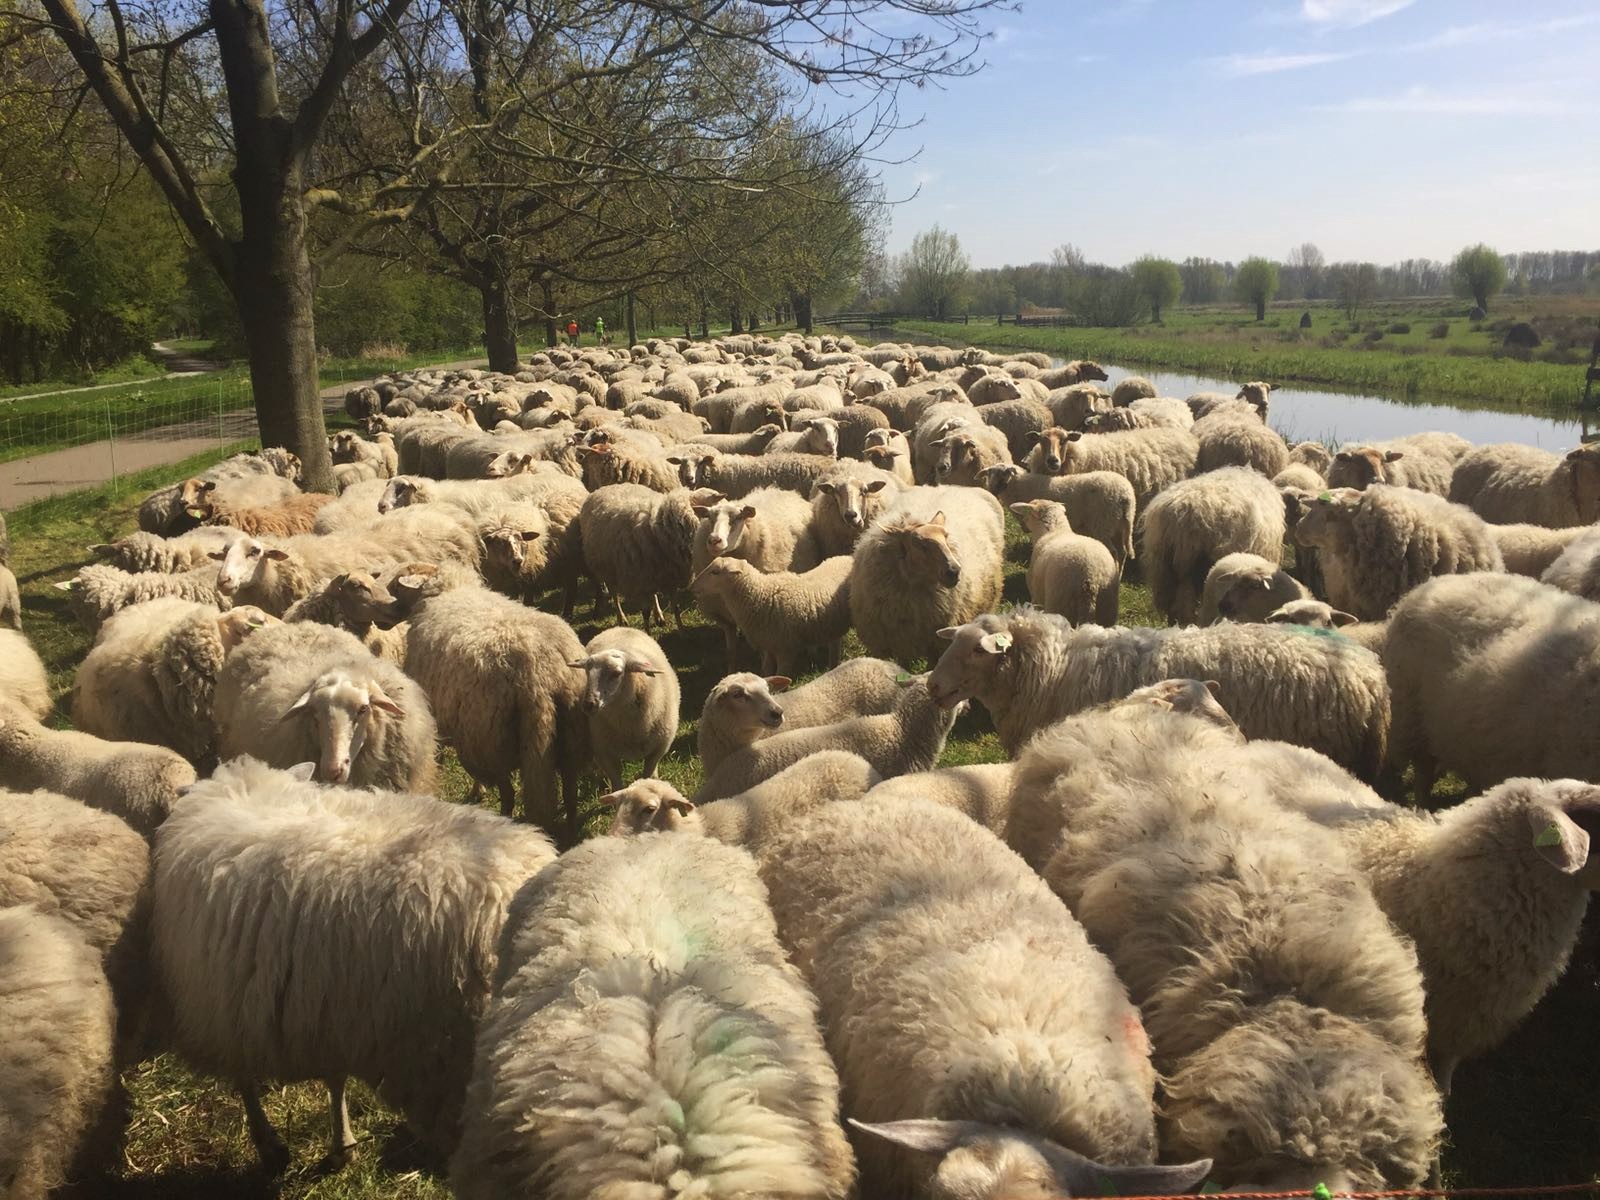 April recap: sheep on the road - http://weirdatheart.com/april-recap/